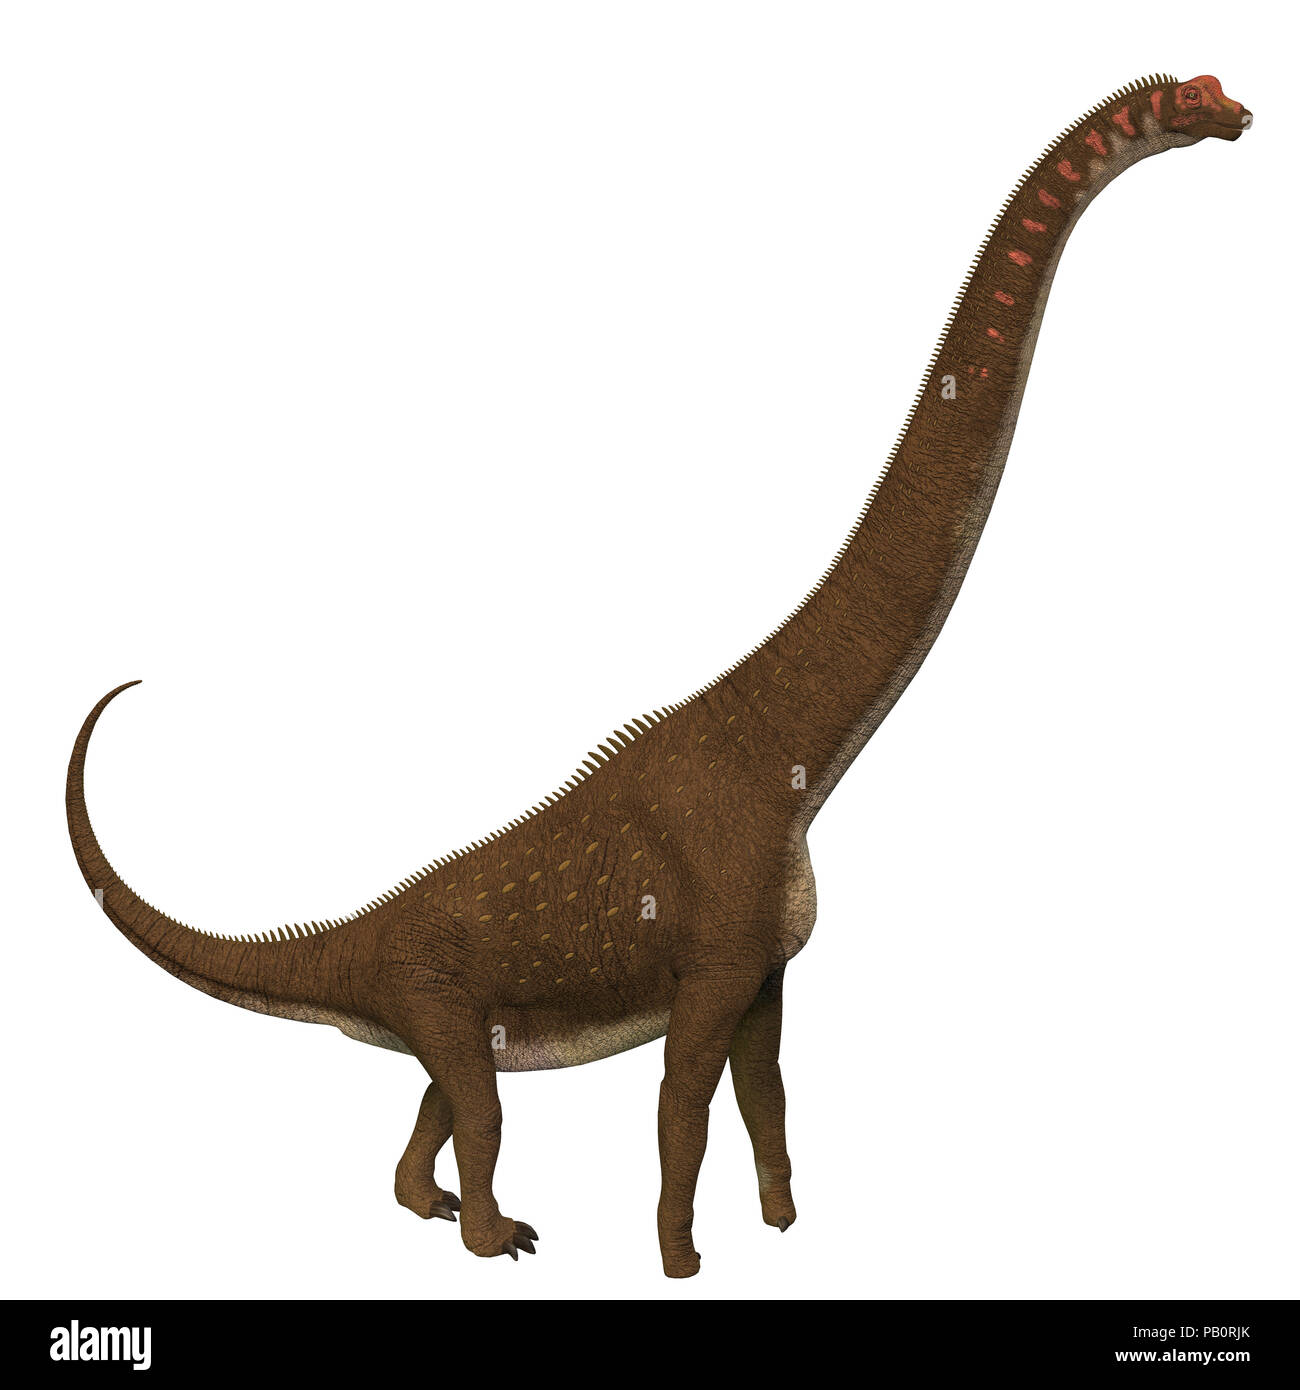 Dinosauro Giraffatitan profilo laterale - Giraffatitan era un erbivoro sauropod dinosaur che vivevano in Africa durante il Giurassico. Foto Stock